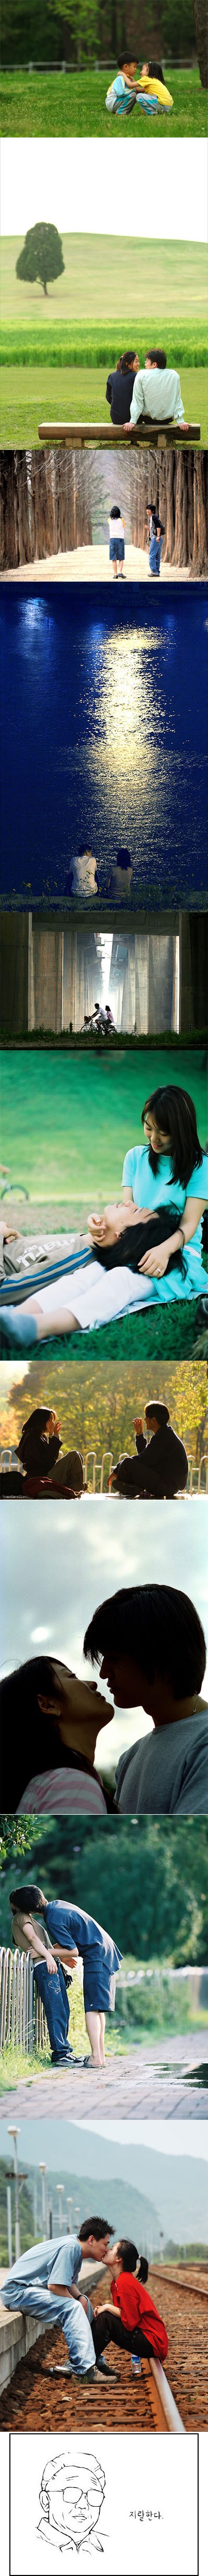 커플들의 아름다운 사진 ^^;